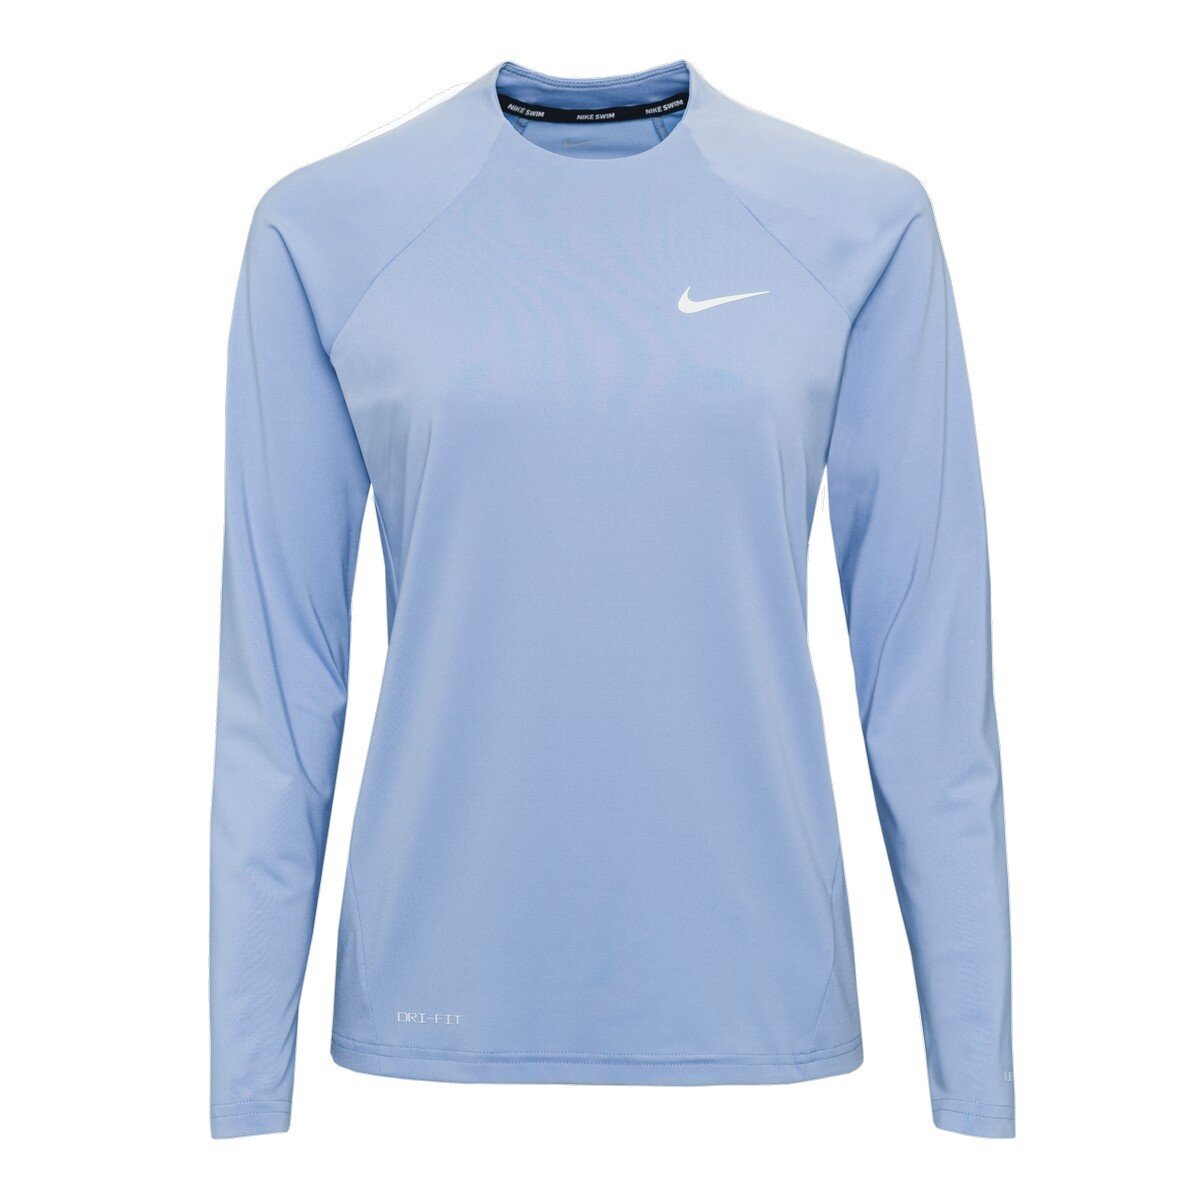 Nike Dri-FIT Legend 女圓領長袖上衣 淺藍